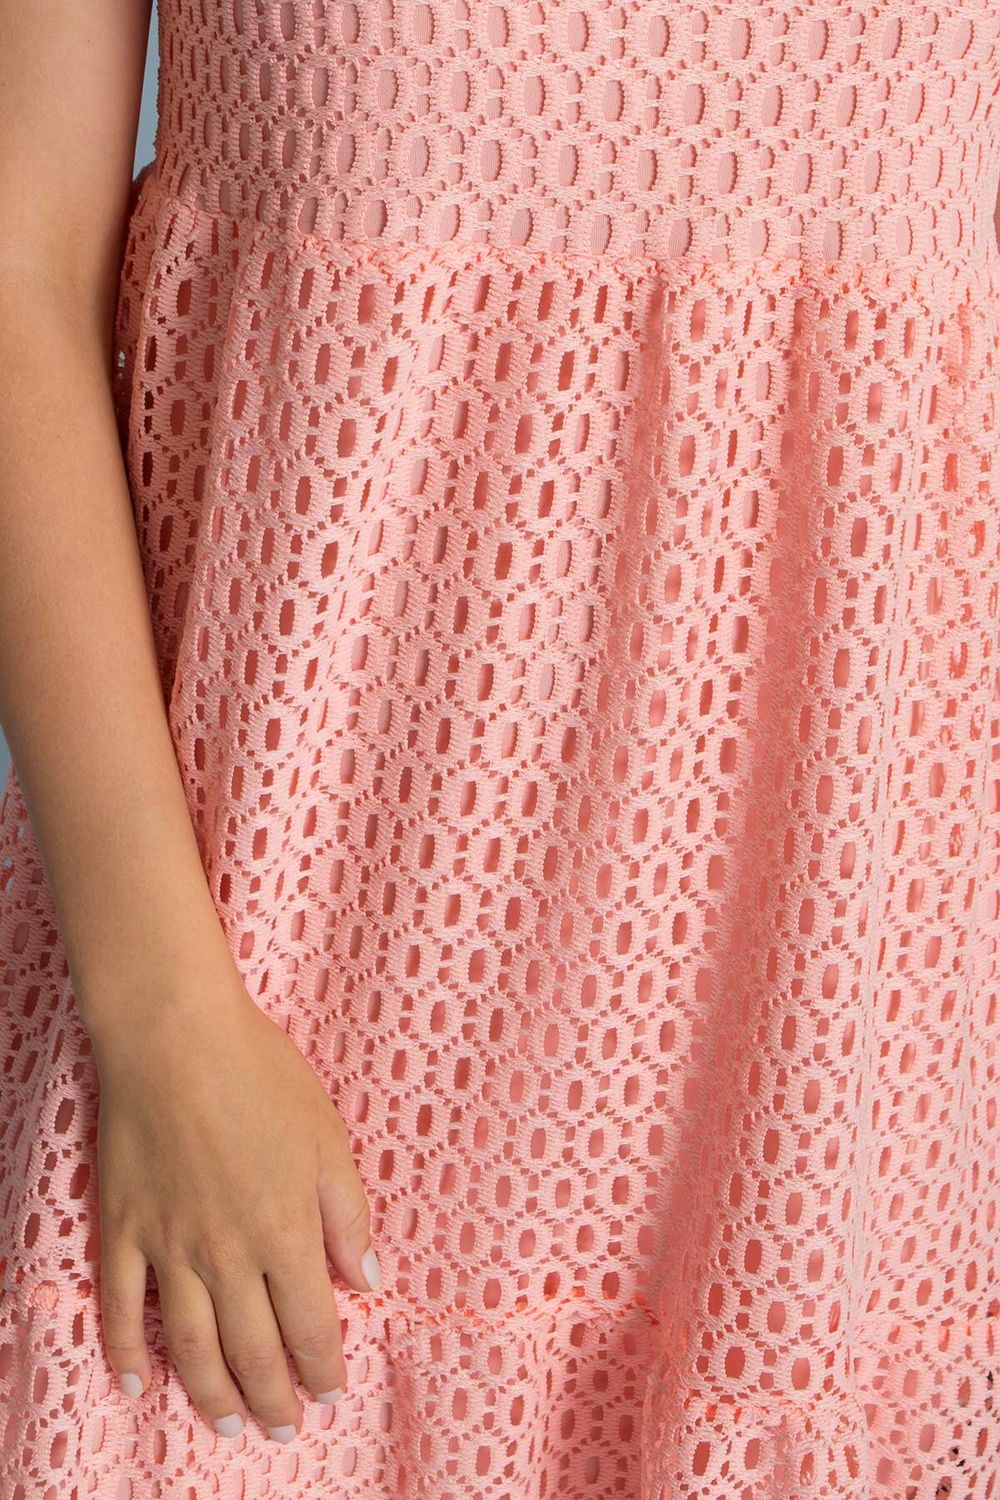 Літнє гипюрове плаття міді з високою талією кольору пудра - фото